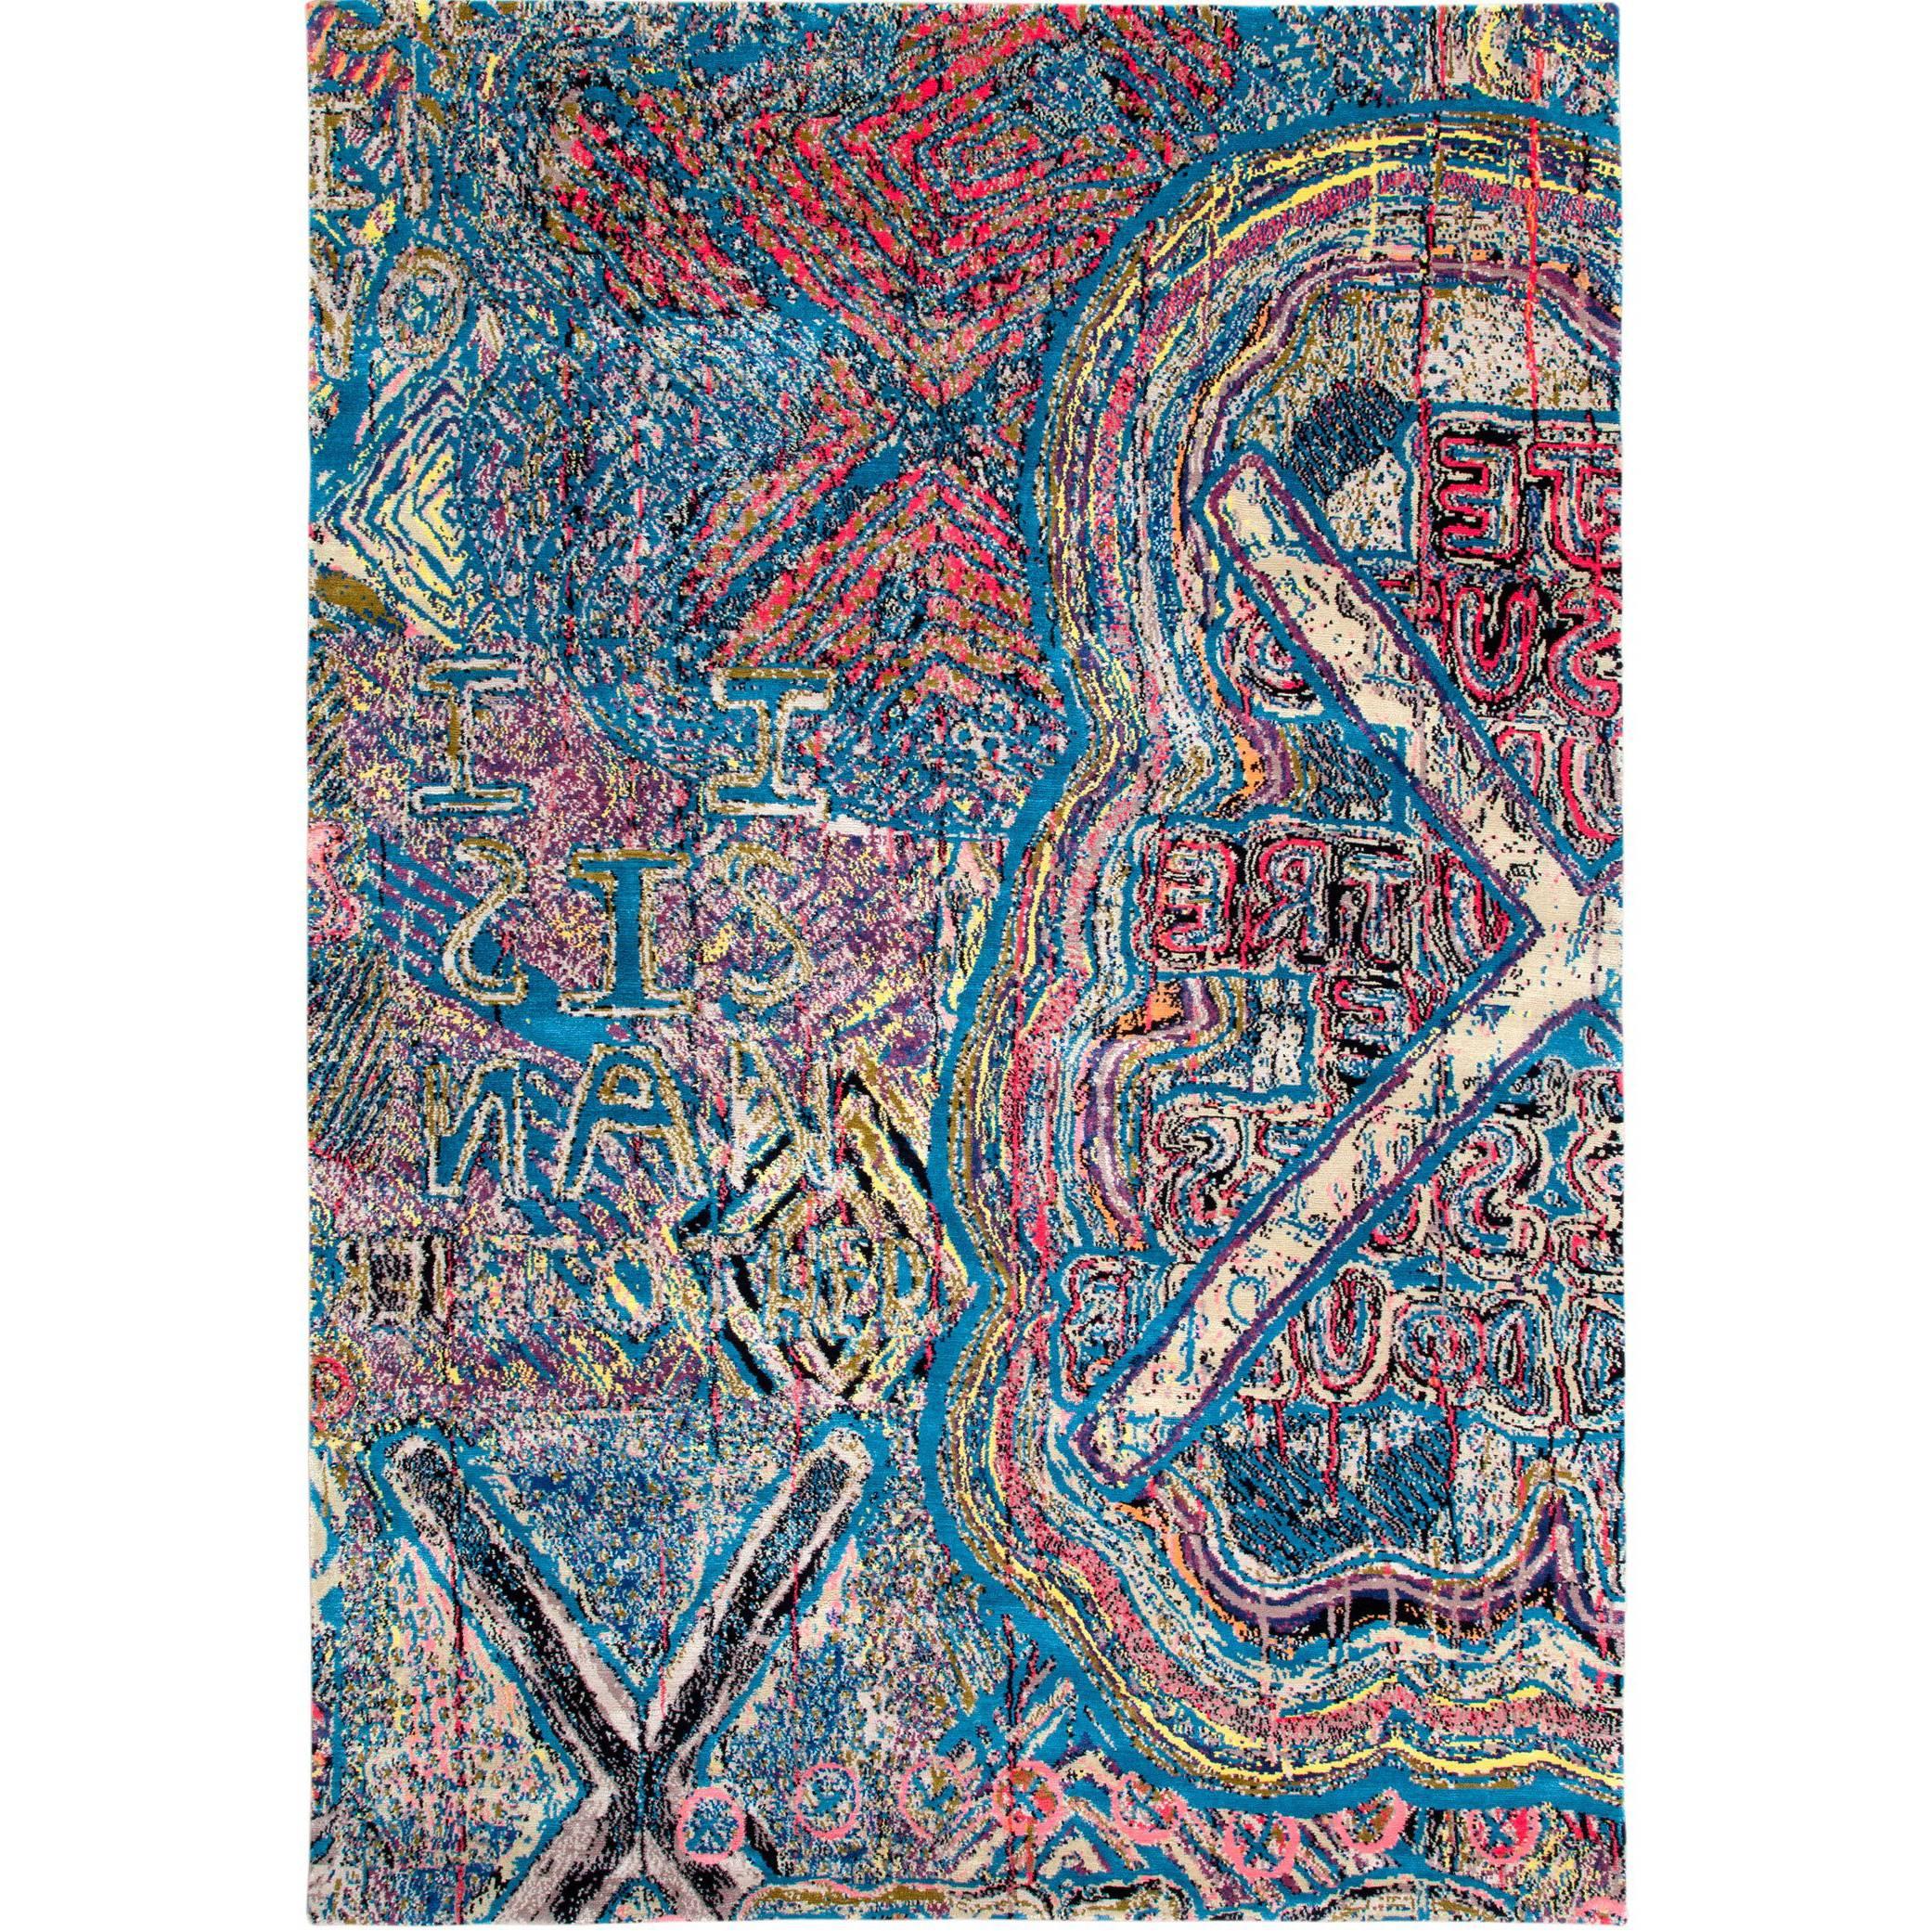 Tapis contemporain en soie et laine multicolore 6x9 cm